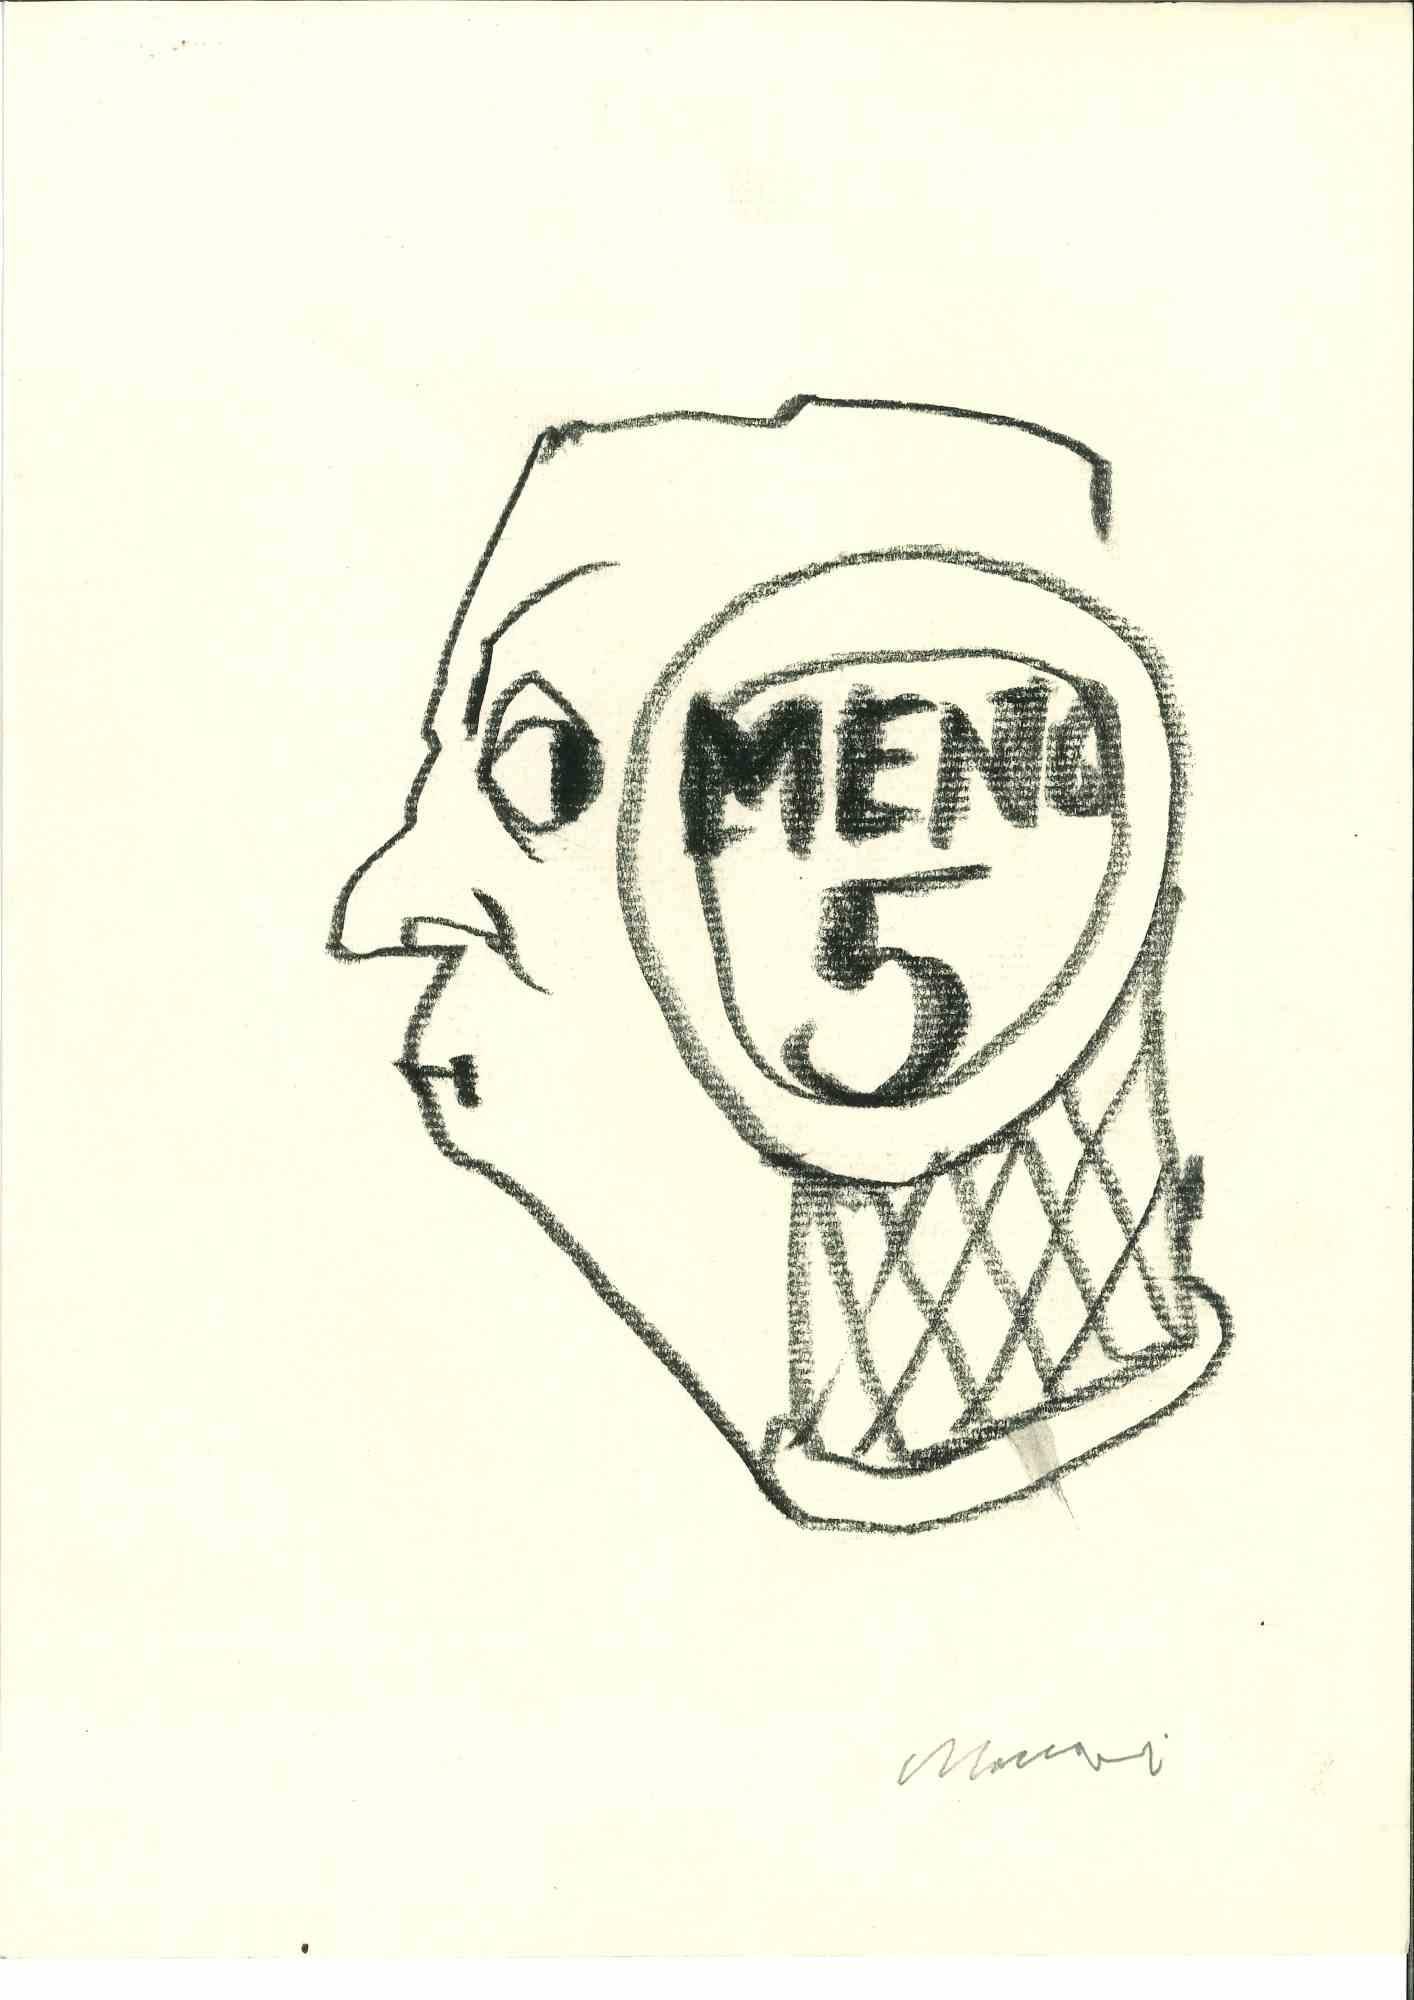 Portrait est un dessin au fusain réalisé par Mino Maccari (1924-1989) au milieu du 20e siècle.

Signé à la main.

Bon état avec de légères rousseurs.

Mino Maccari (Sienne, 1924-Rome, 16 juin 1989) est un écrivain, peintre, graveur et journaliste